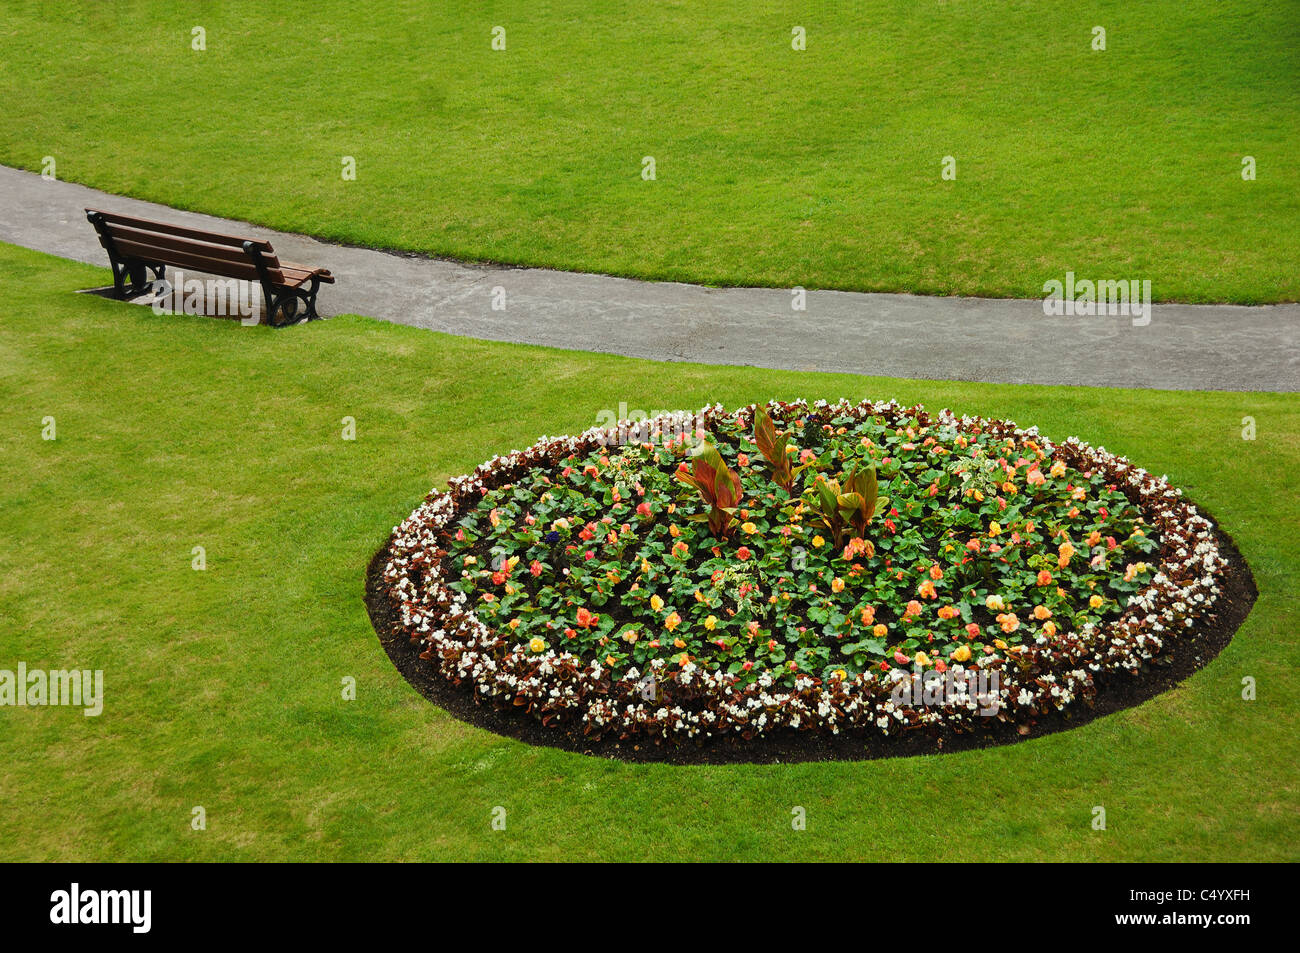 Lit de fleur et d'audience à la Parade des jardins, à côté de la rivière Avon, dans le centre-ville de Bath, Somerset, Royaume-Uni. Banque D'Images